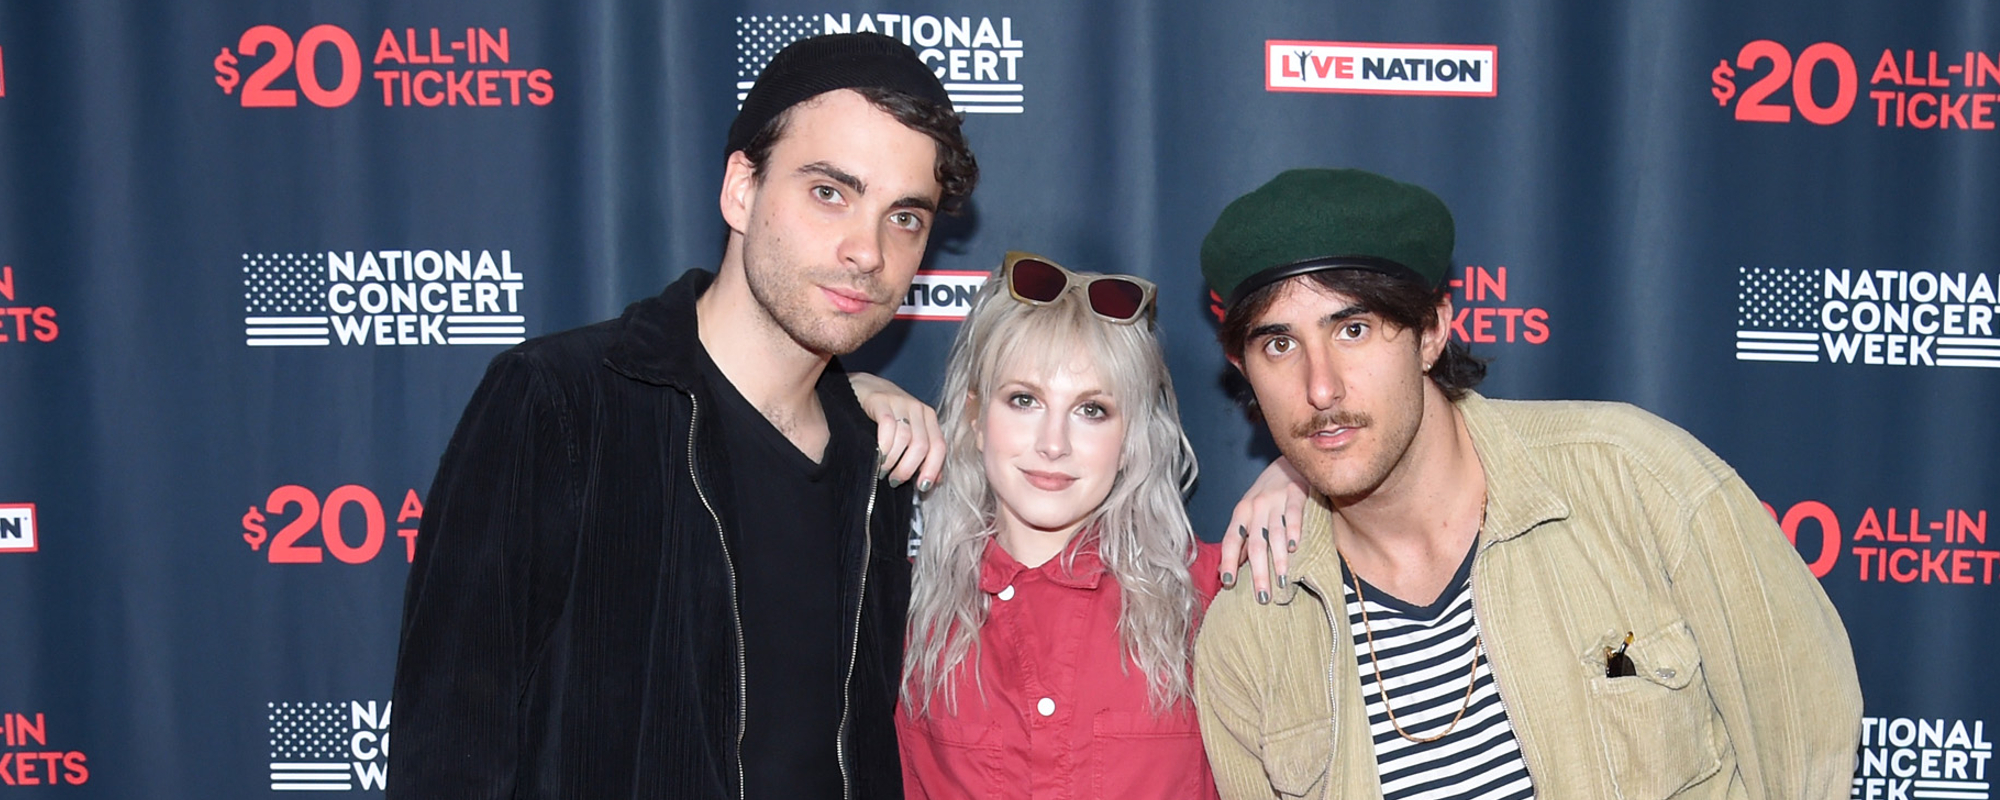 Le buzz de la rupture de Paramore monte alors que le groupe abandonne sa prestation en tête d'affiche du festival et publie une déclaration sur Instagram